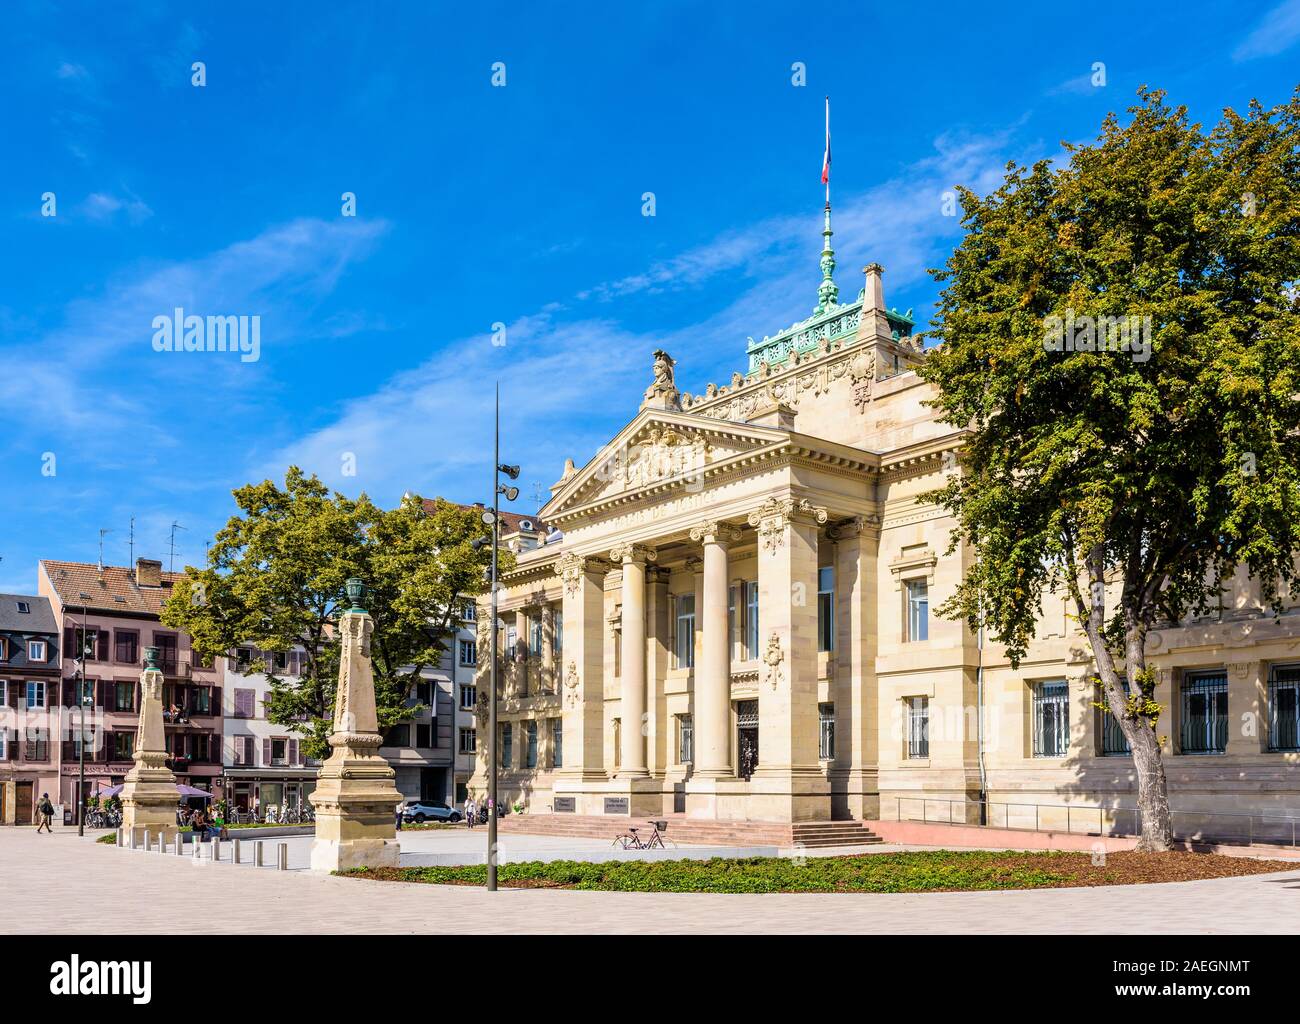 Fassade und der Portikus mit ionischen Säulen des Palais de Justice, ein neo-griechischen Palastes unter dem Deutschen Reich, in dem sich das hohe Gericht gebaut. Stockfoto